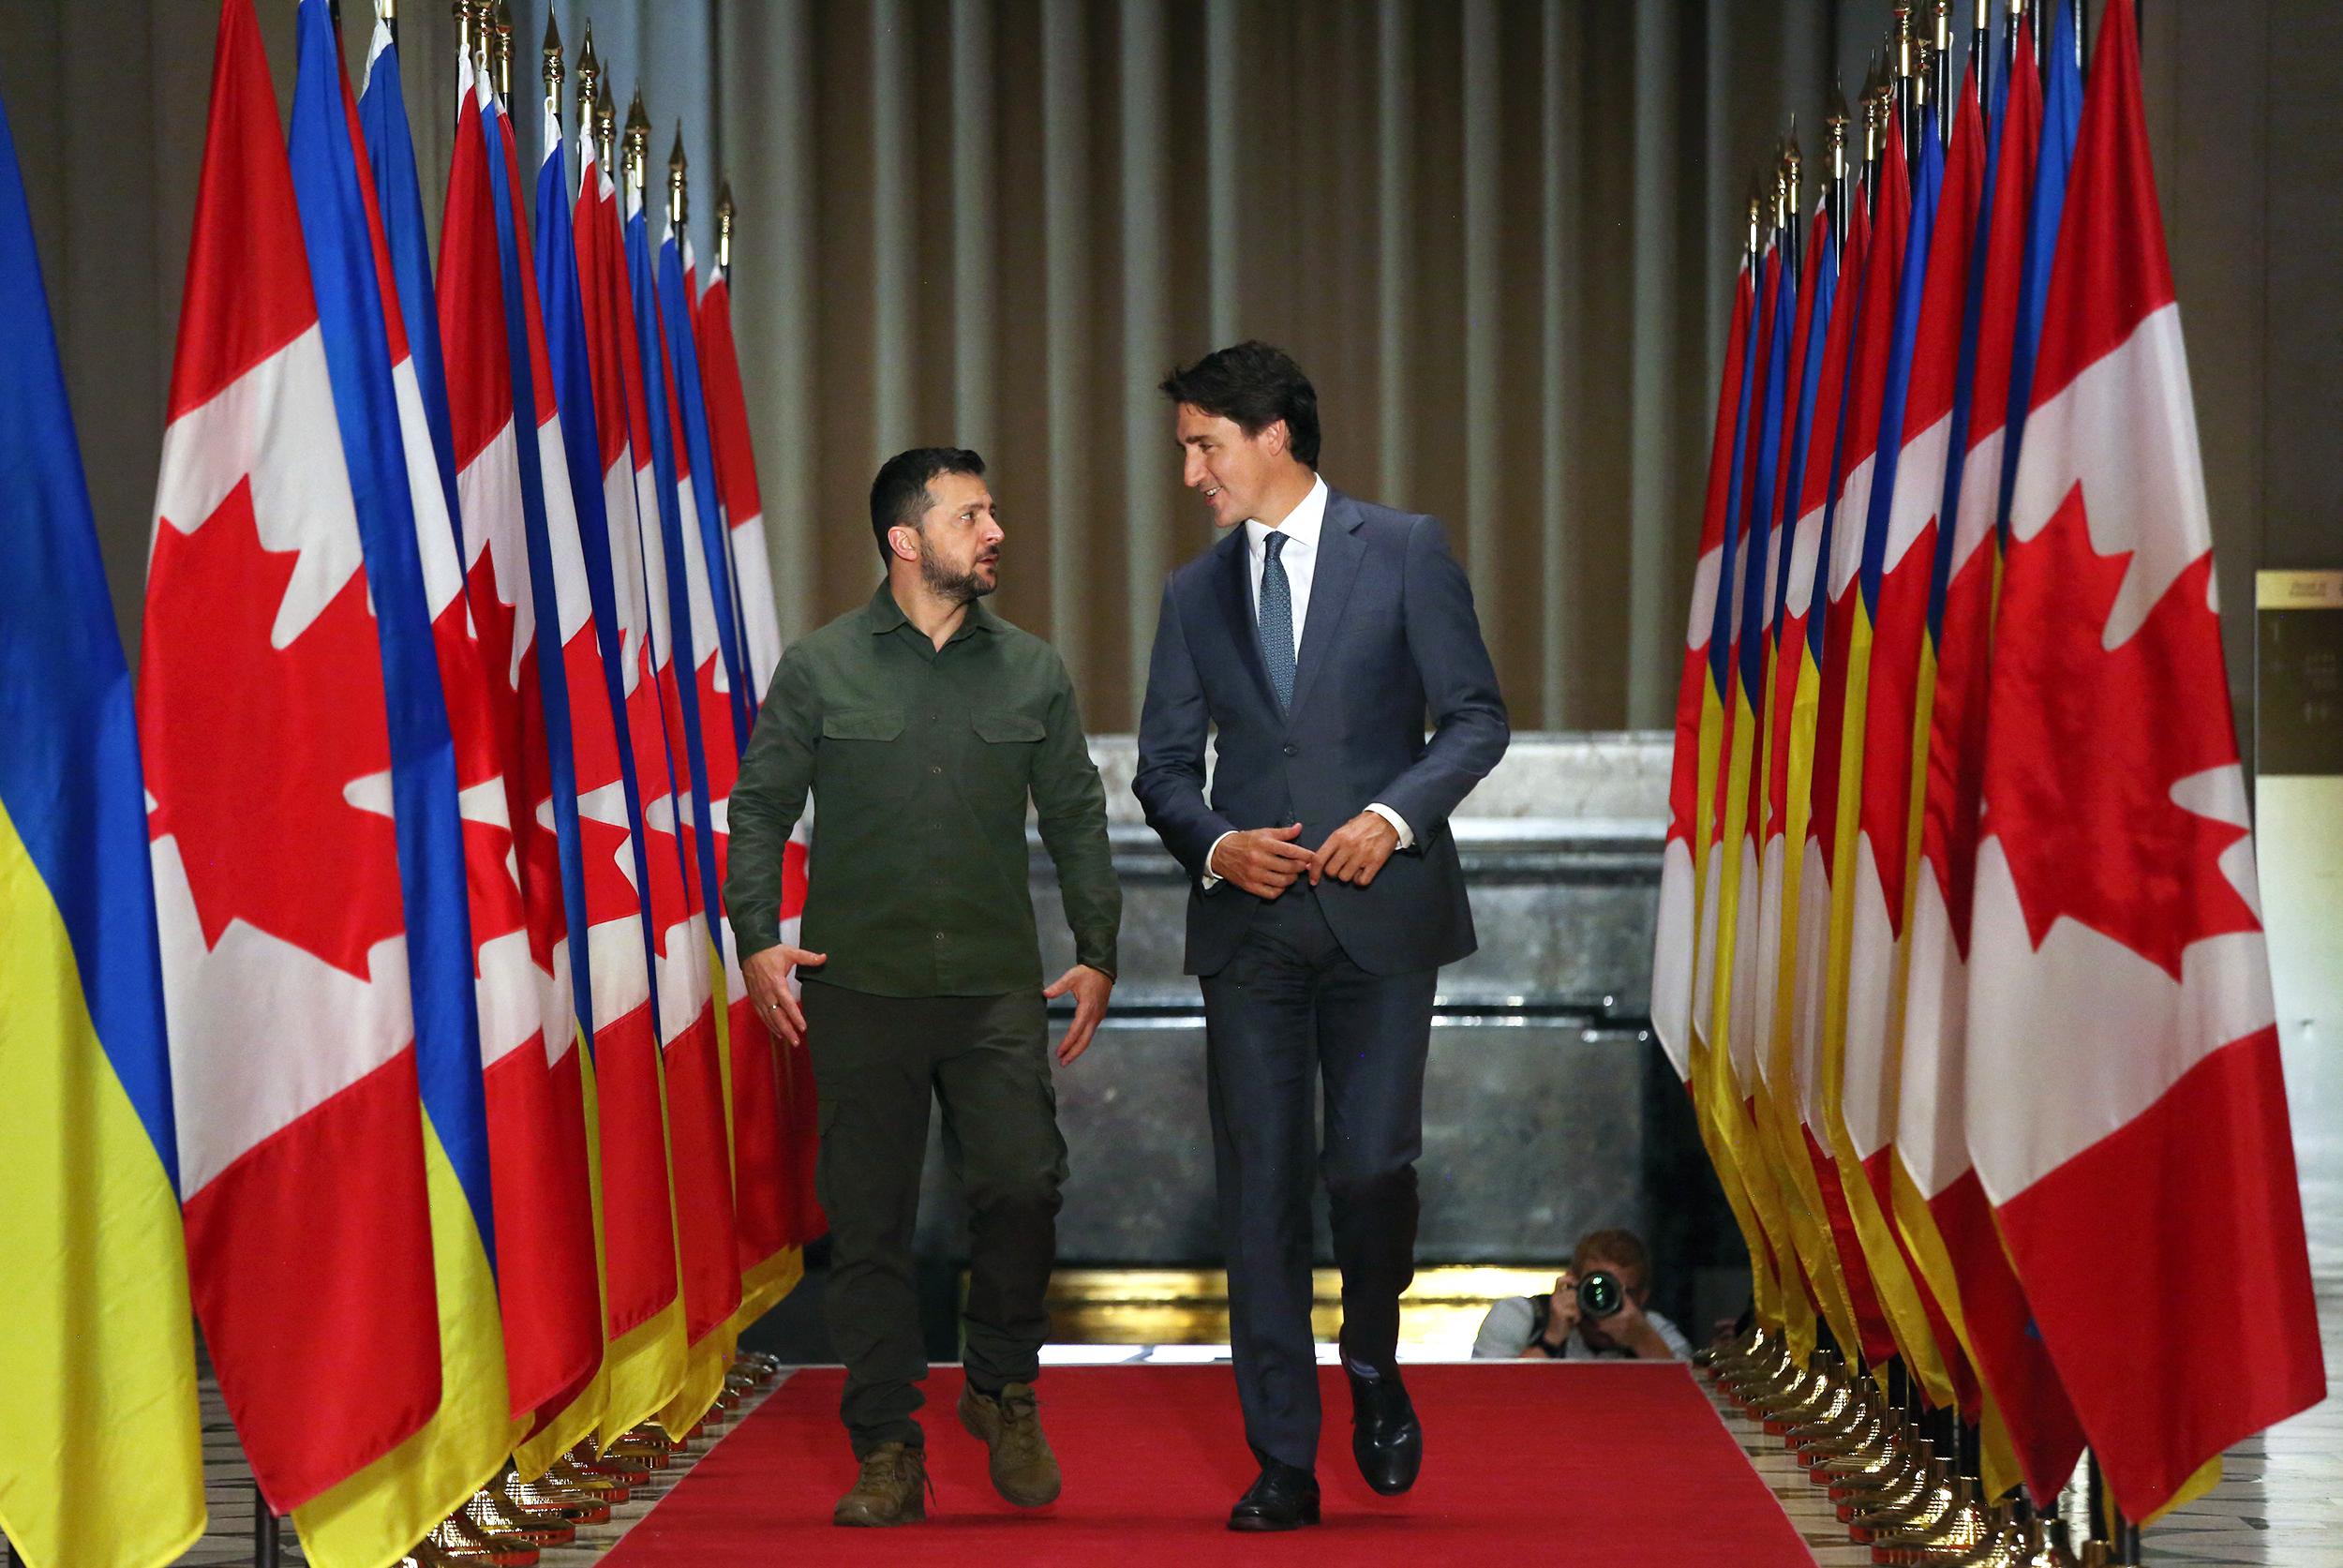 Le président ukrainien Volodymyr Zelensky marche aux côtés de Justin Trudeau avant une conférence de presse le 22 septembre à Ottawa. [AFP - Dave Chan]